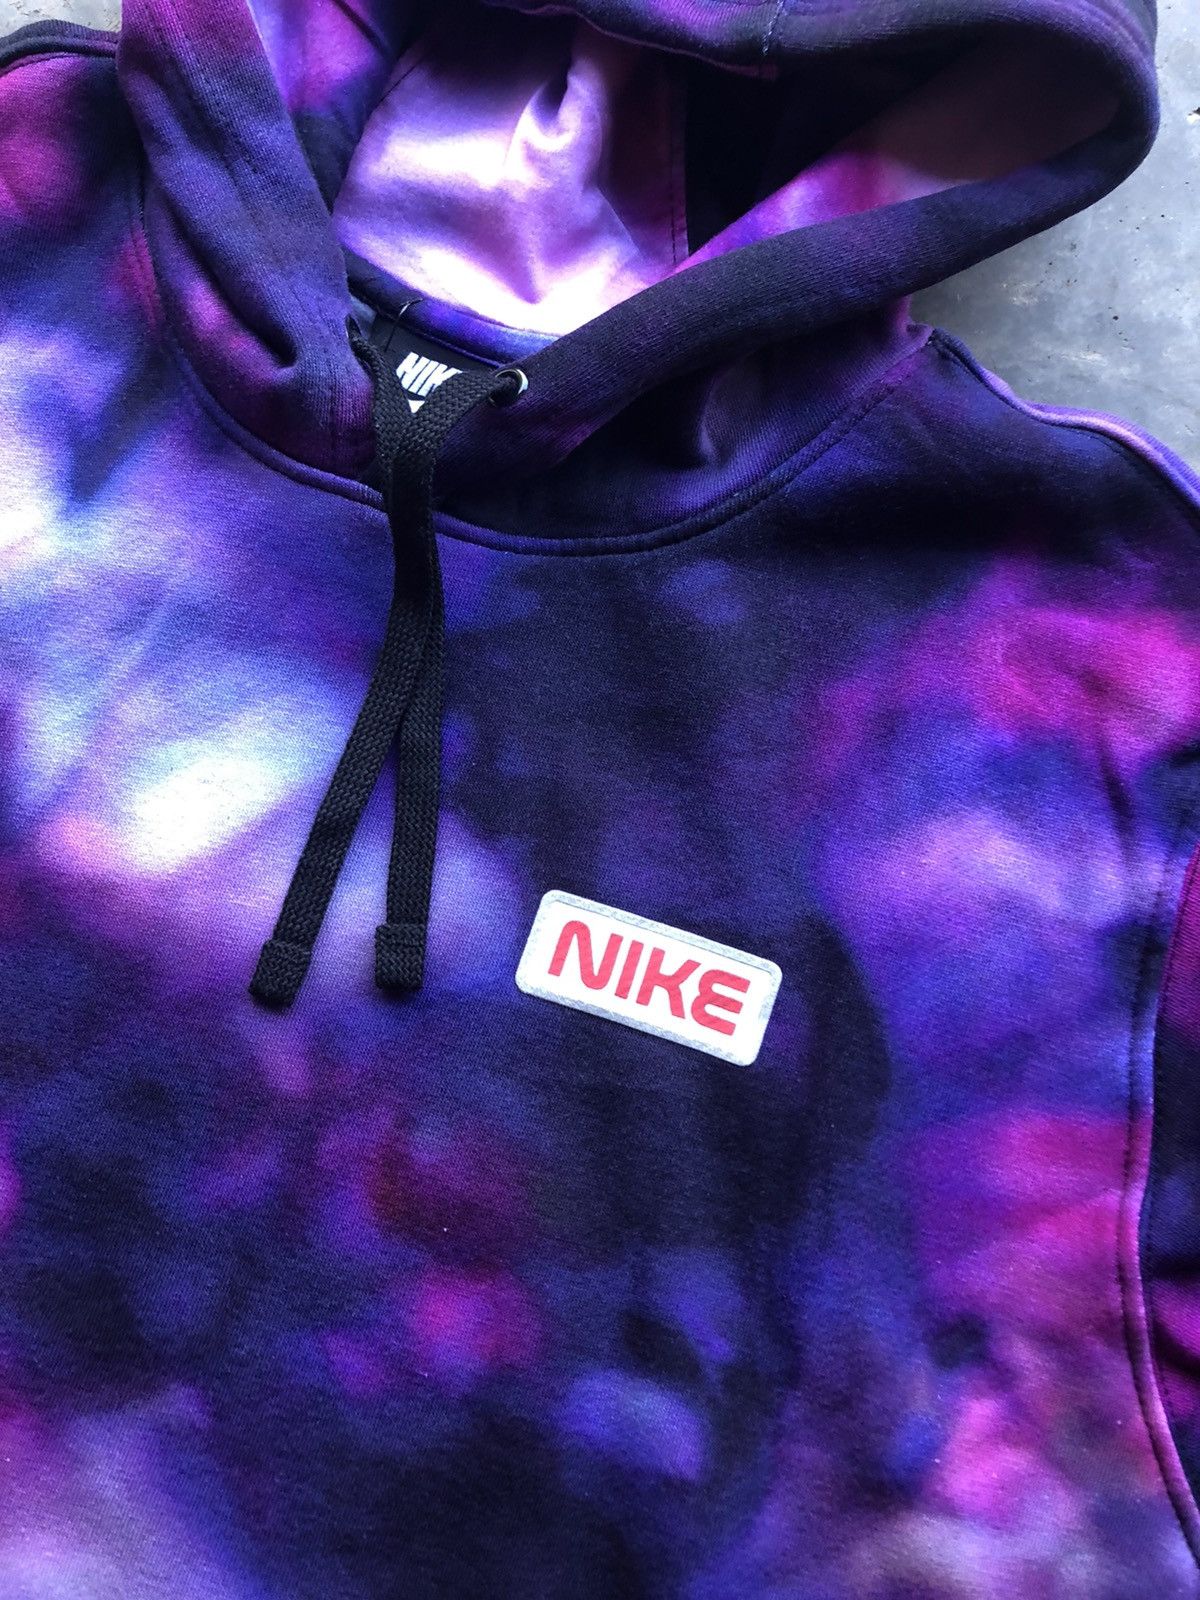 Nike Nike Sportswear “NASA” galaxy Purple Tie Dye hoodie Size US XL / EU 56 / 4 - 3 Thumbnail